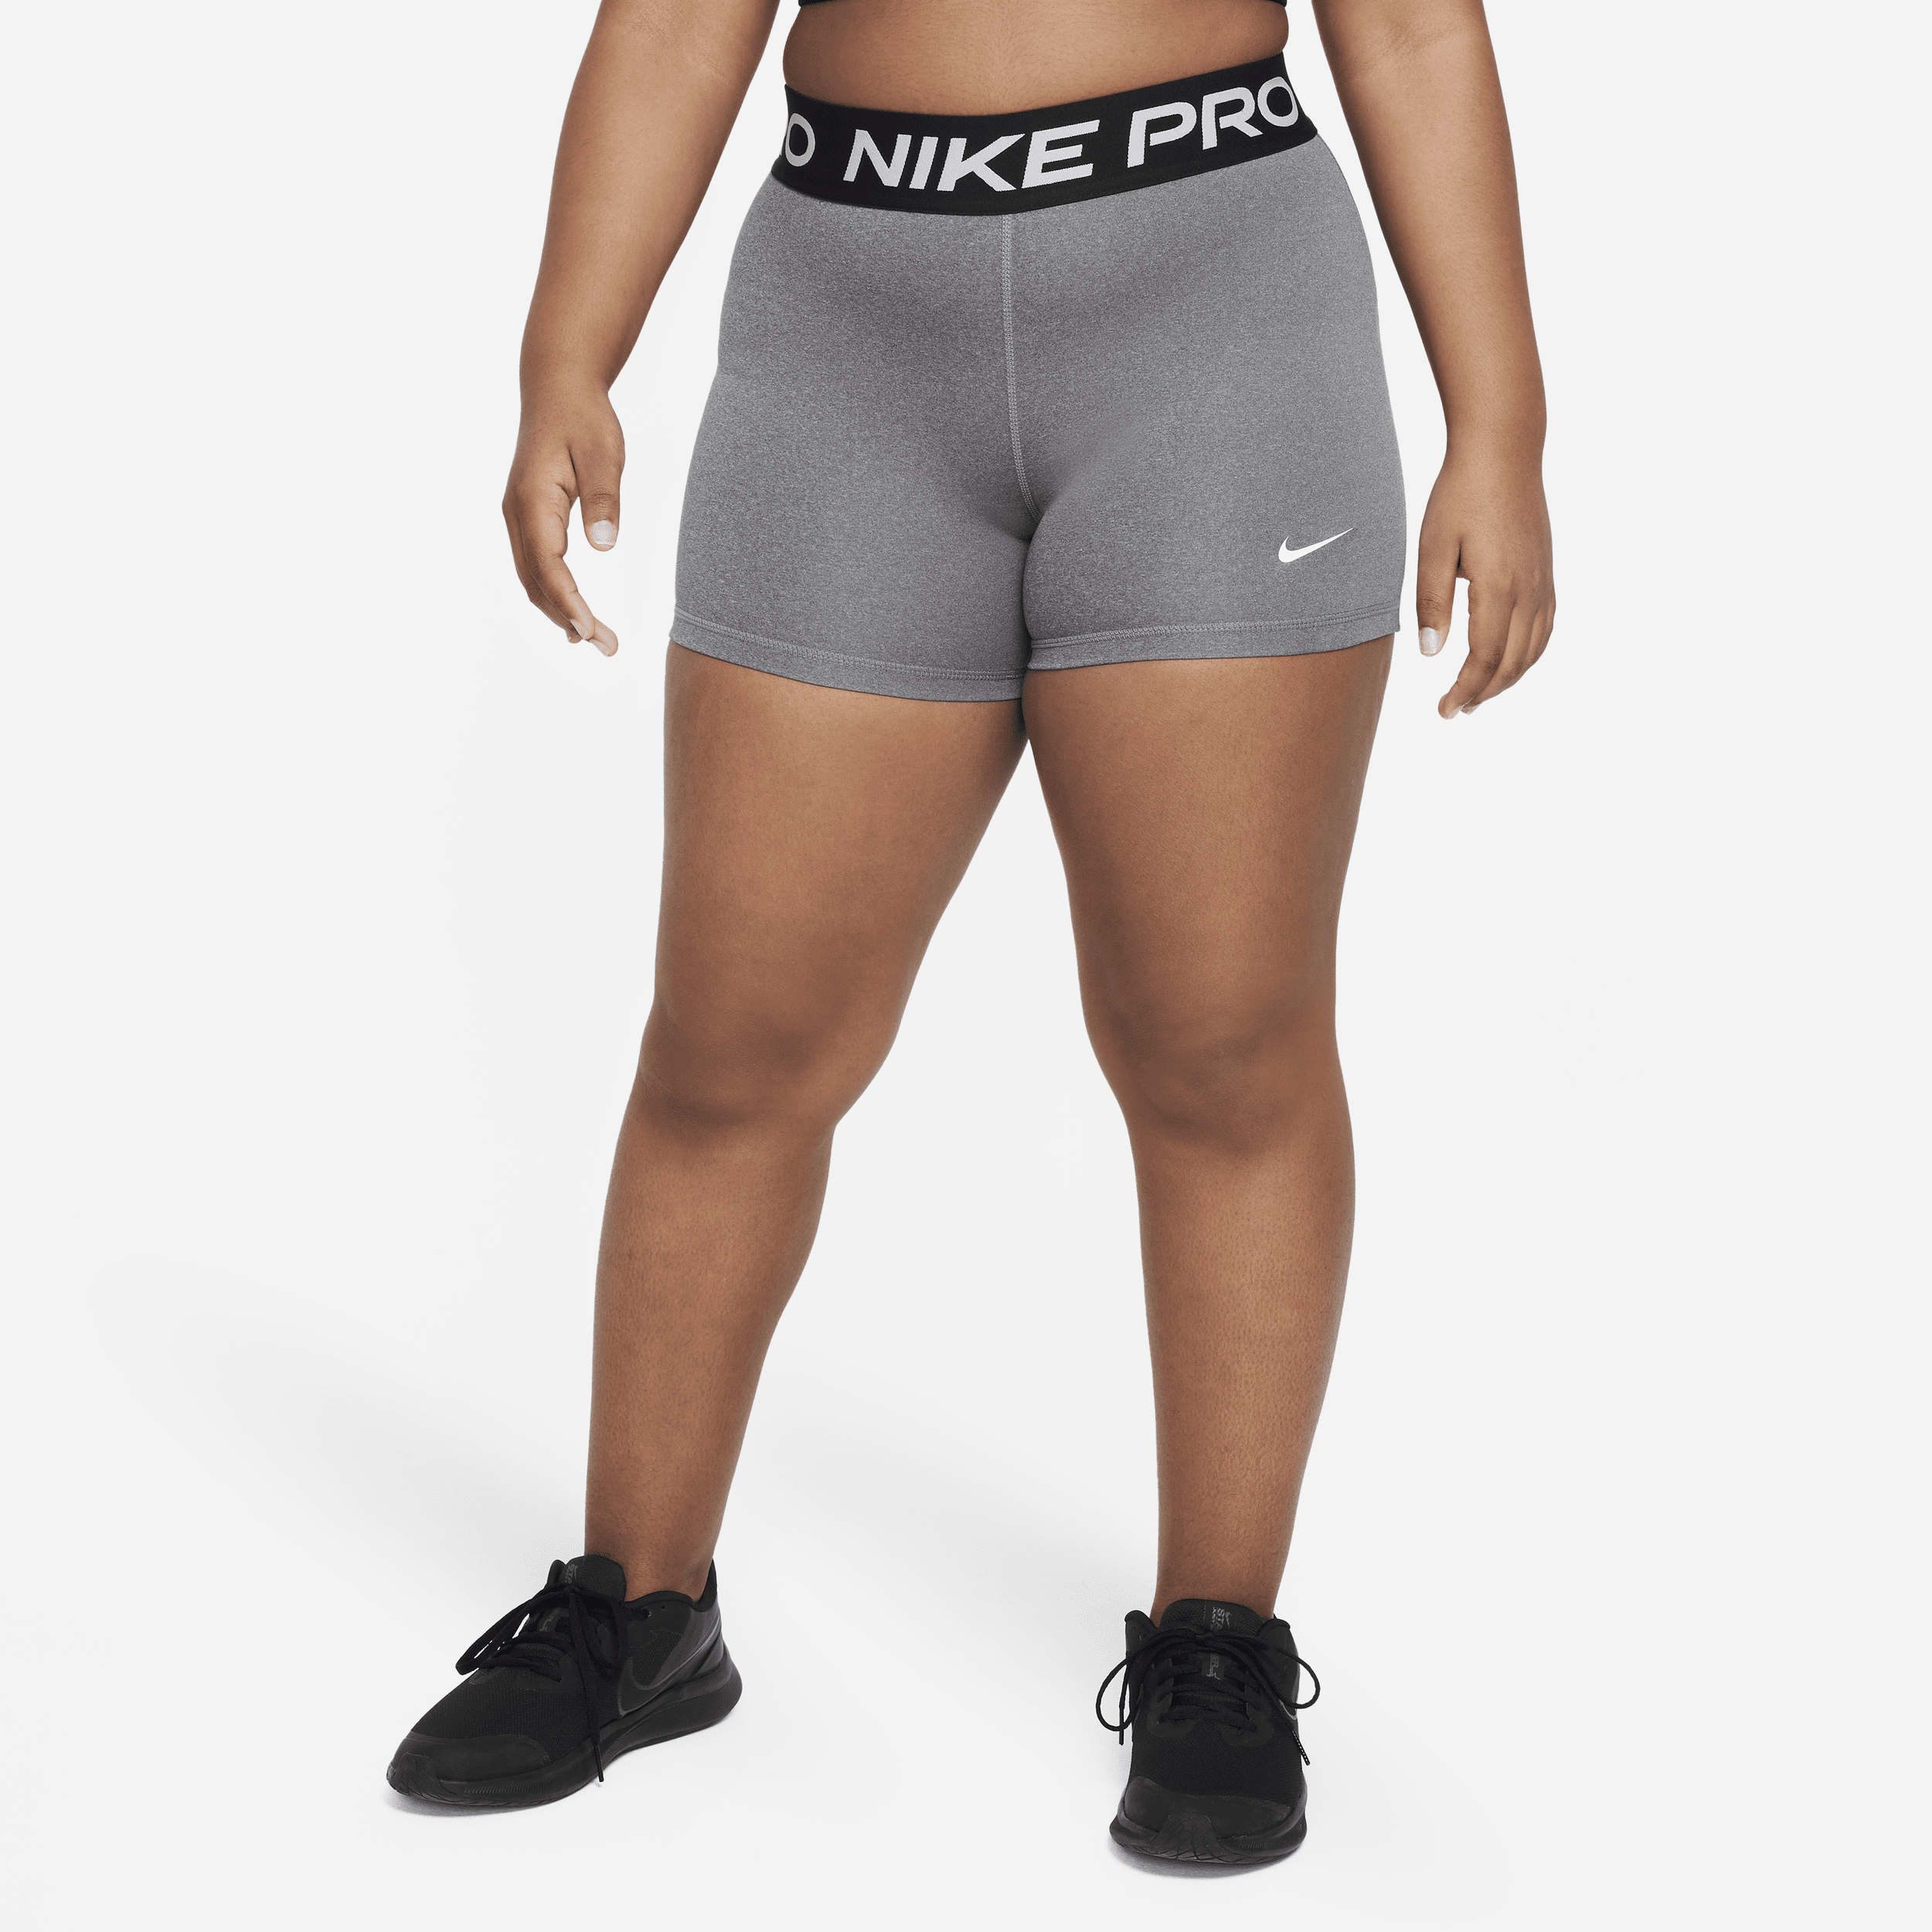 Shorts Nike Pro Dri-FIT (Taglia grande) - Ragazza - Grigio